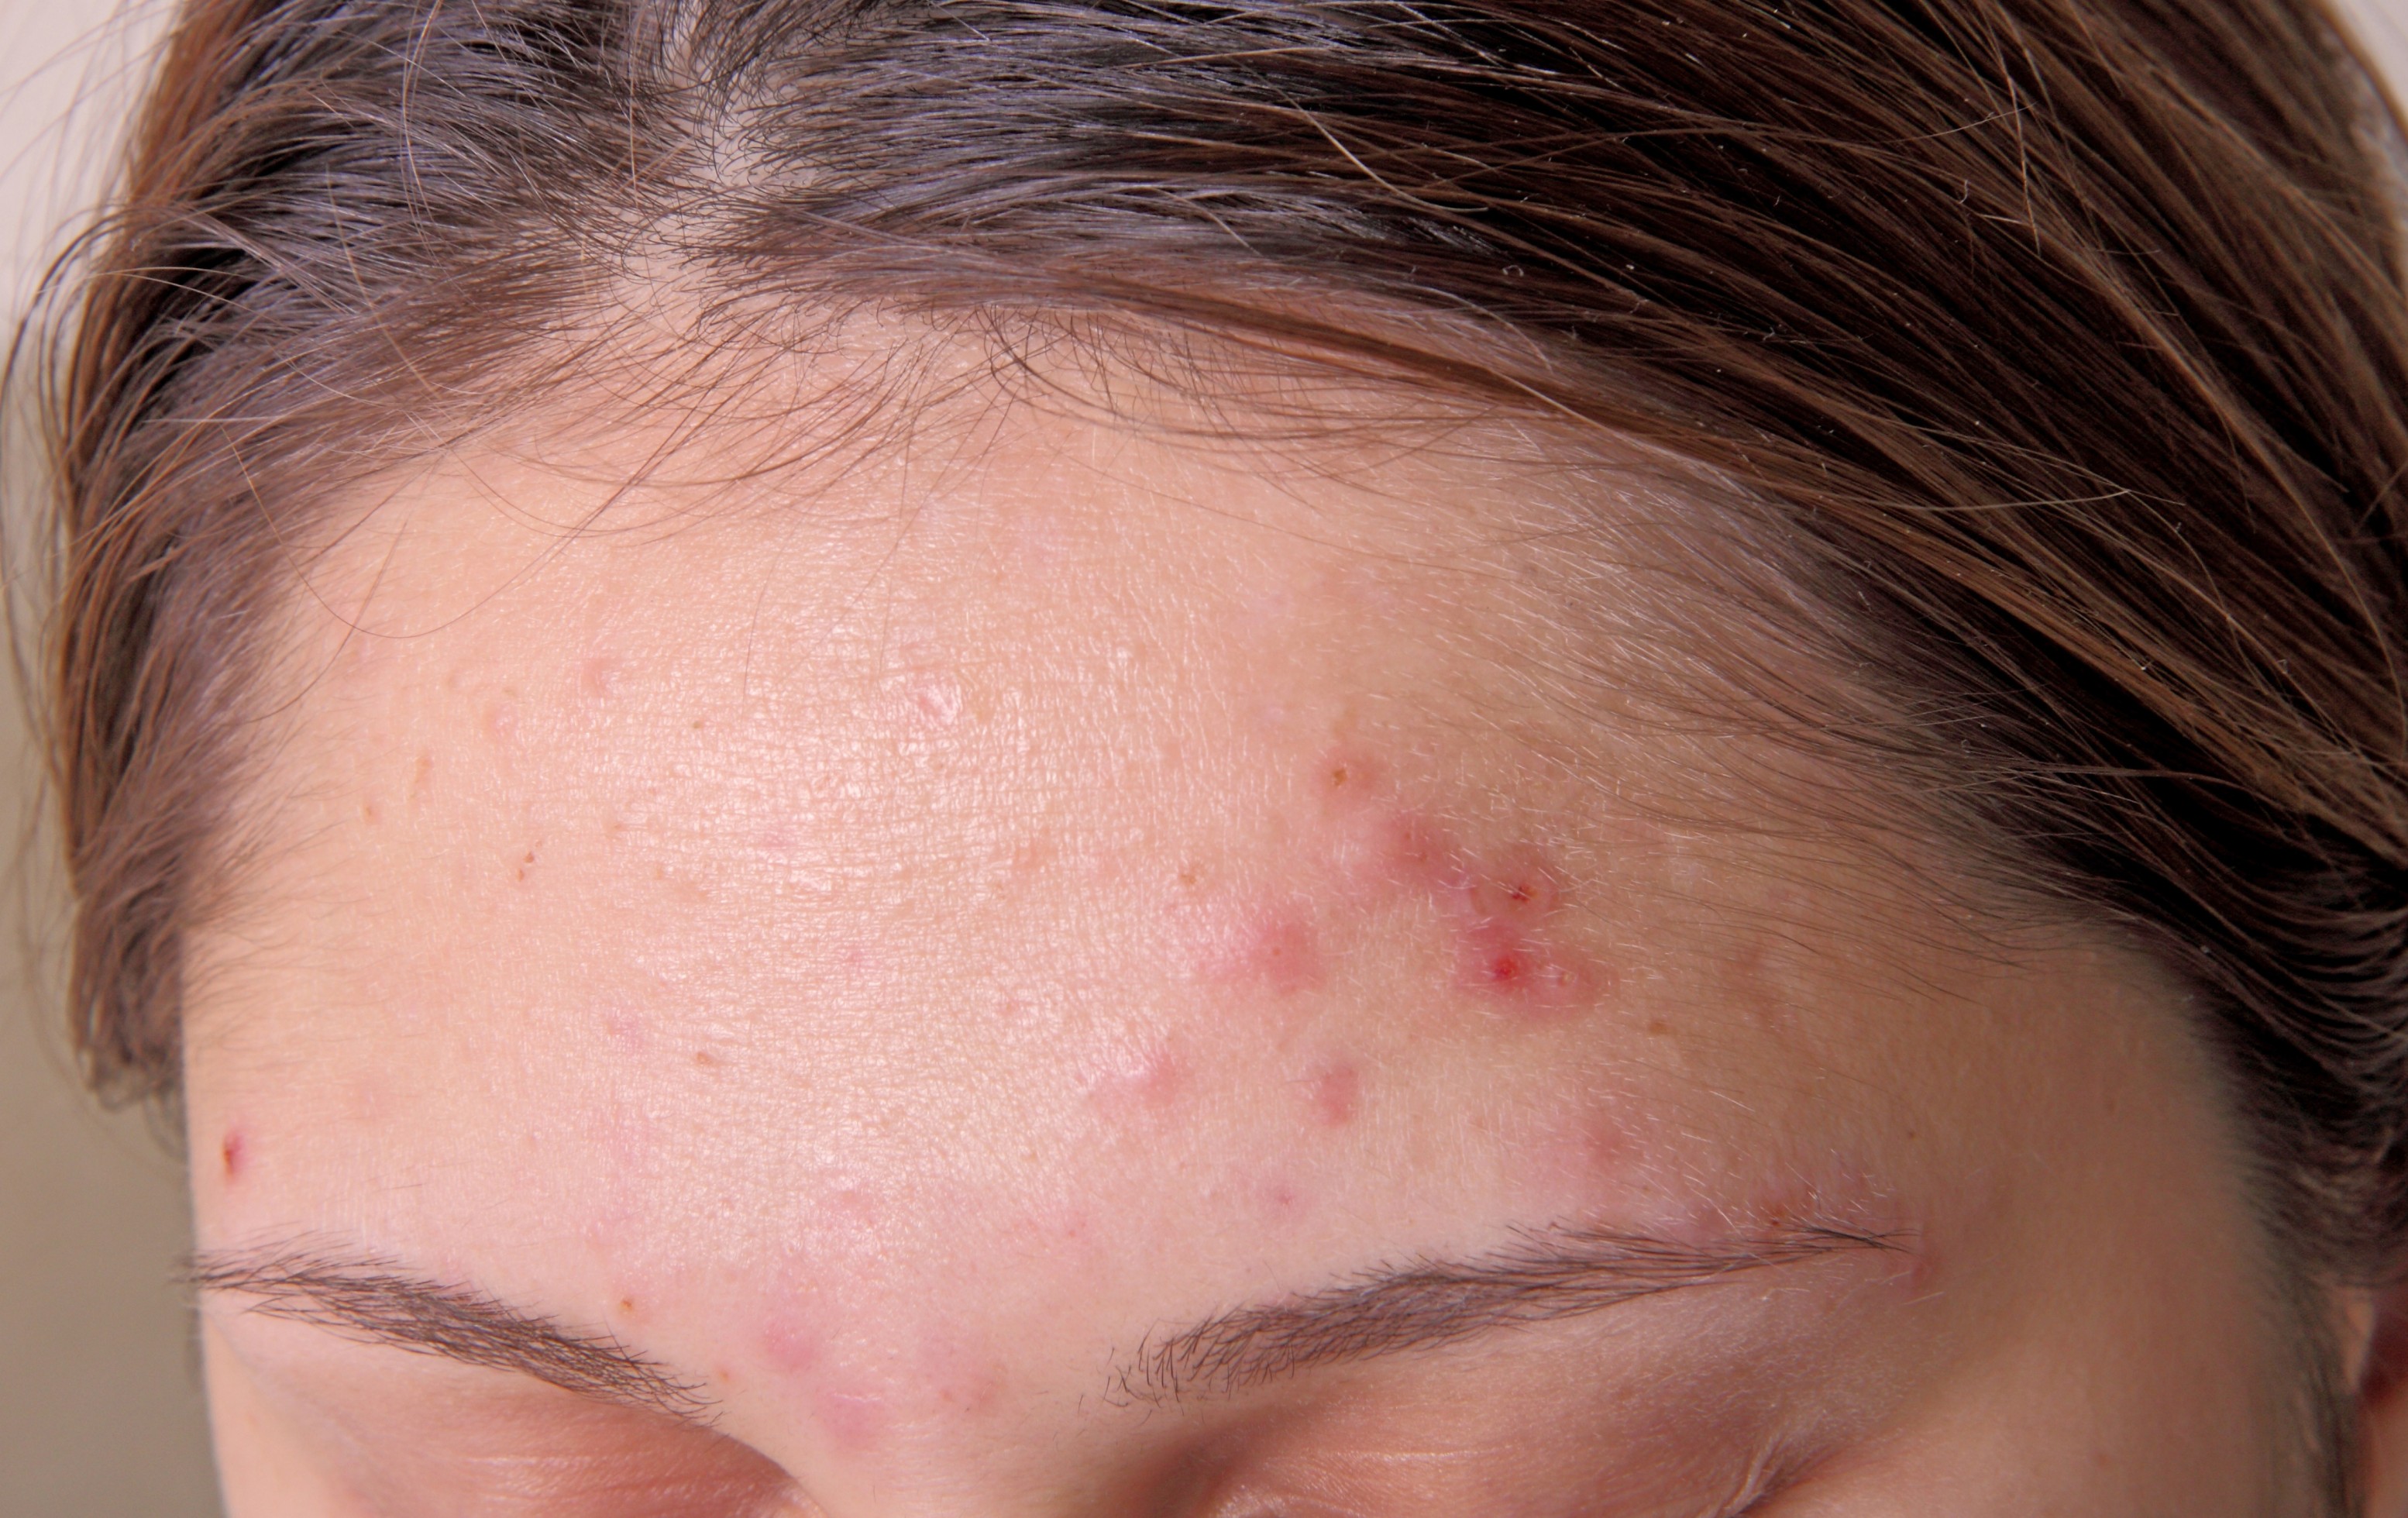 acne due to dandruff